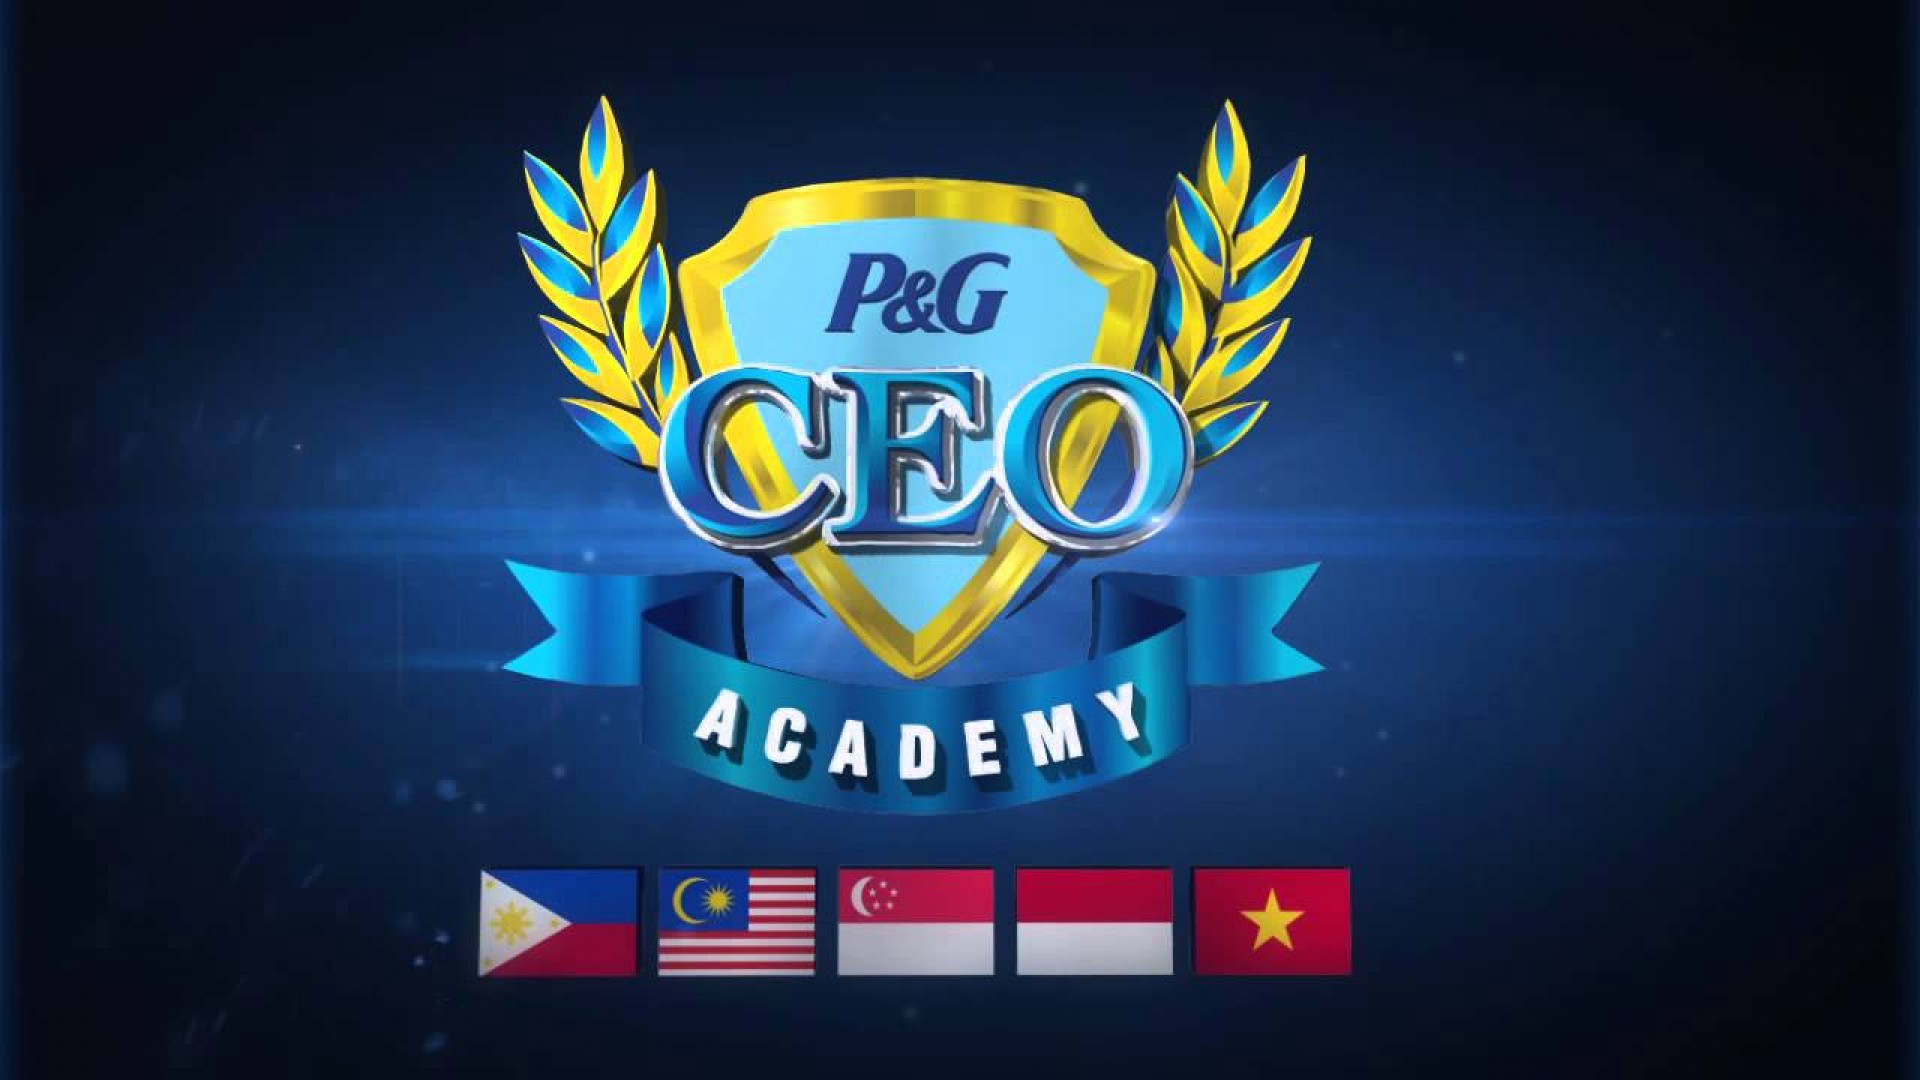 P&G CEO Academy 2016 - Cơ hội được thực tập tại P&G Việt Nam